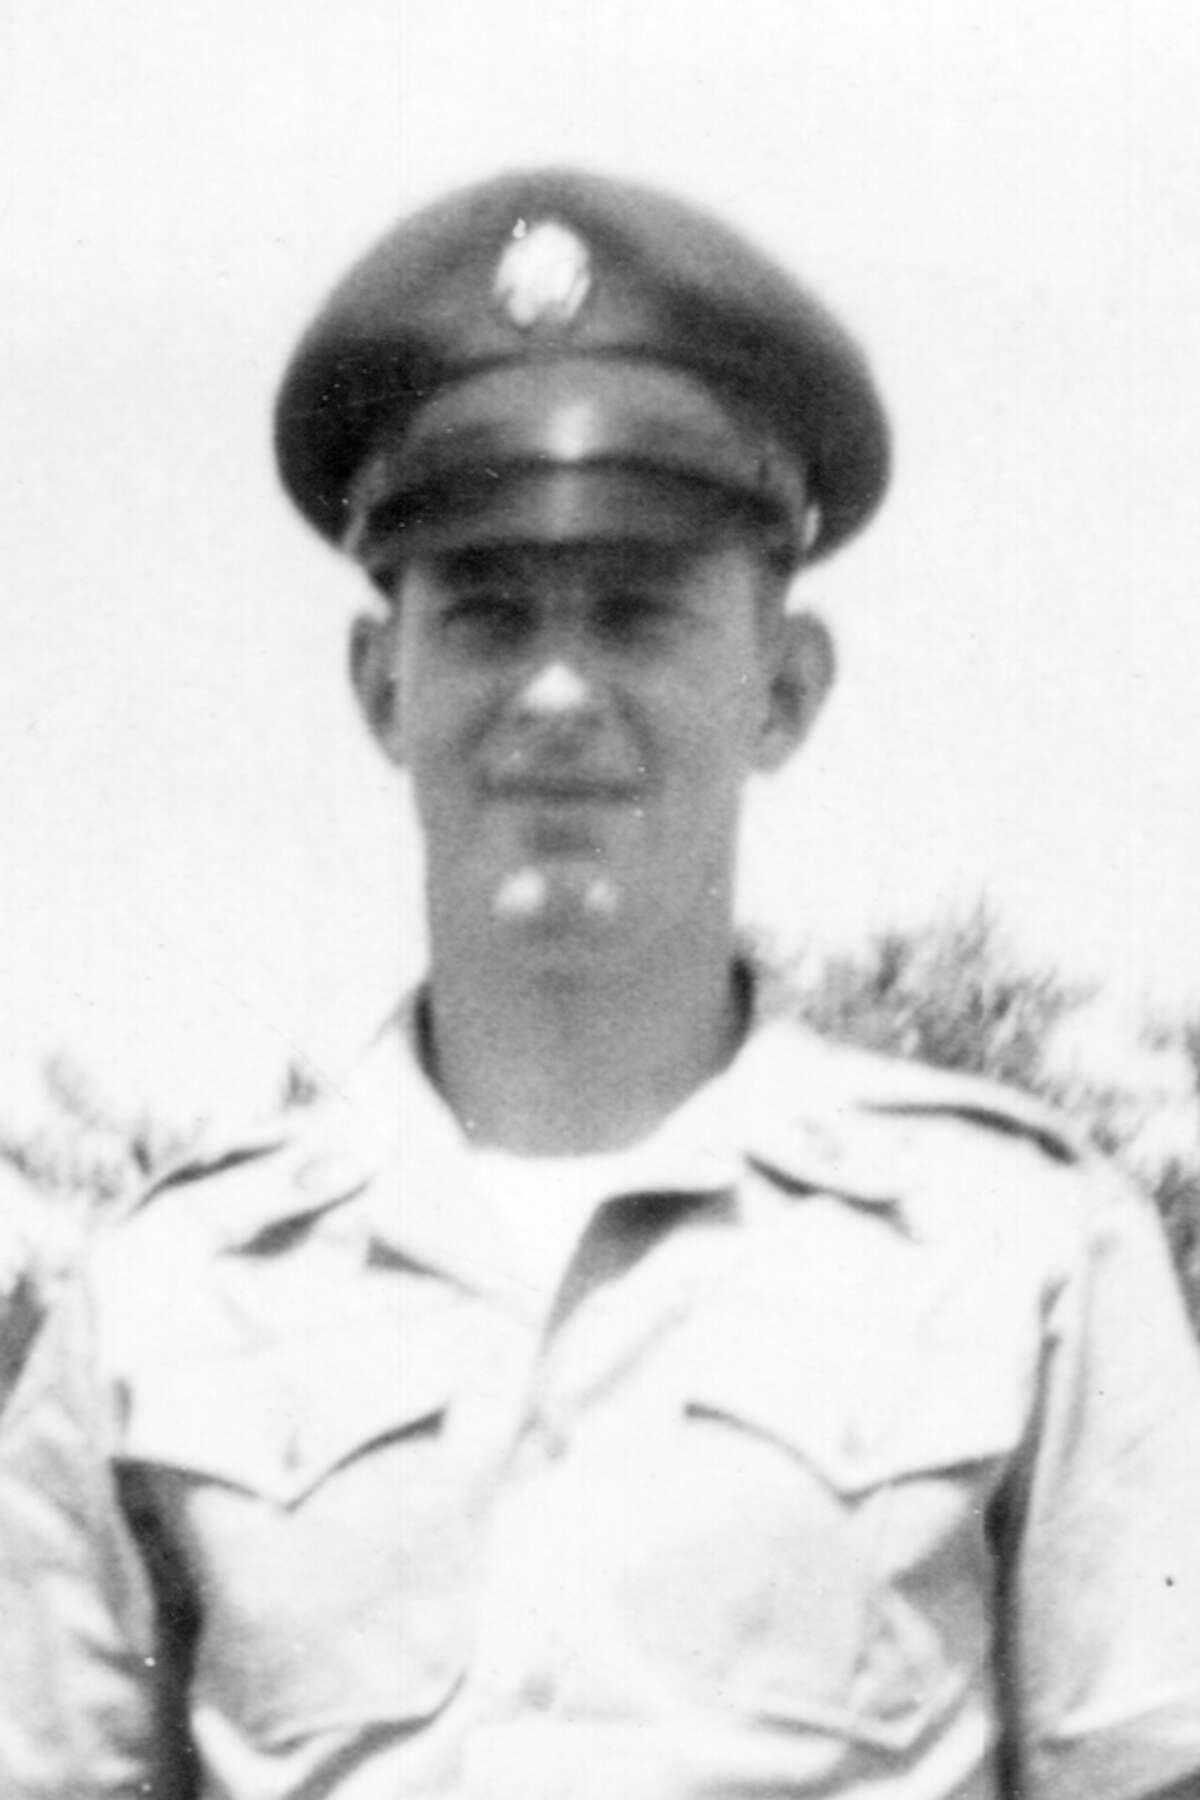 Donald Kailing, SPC4, U.S. Army